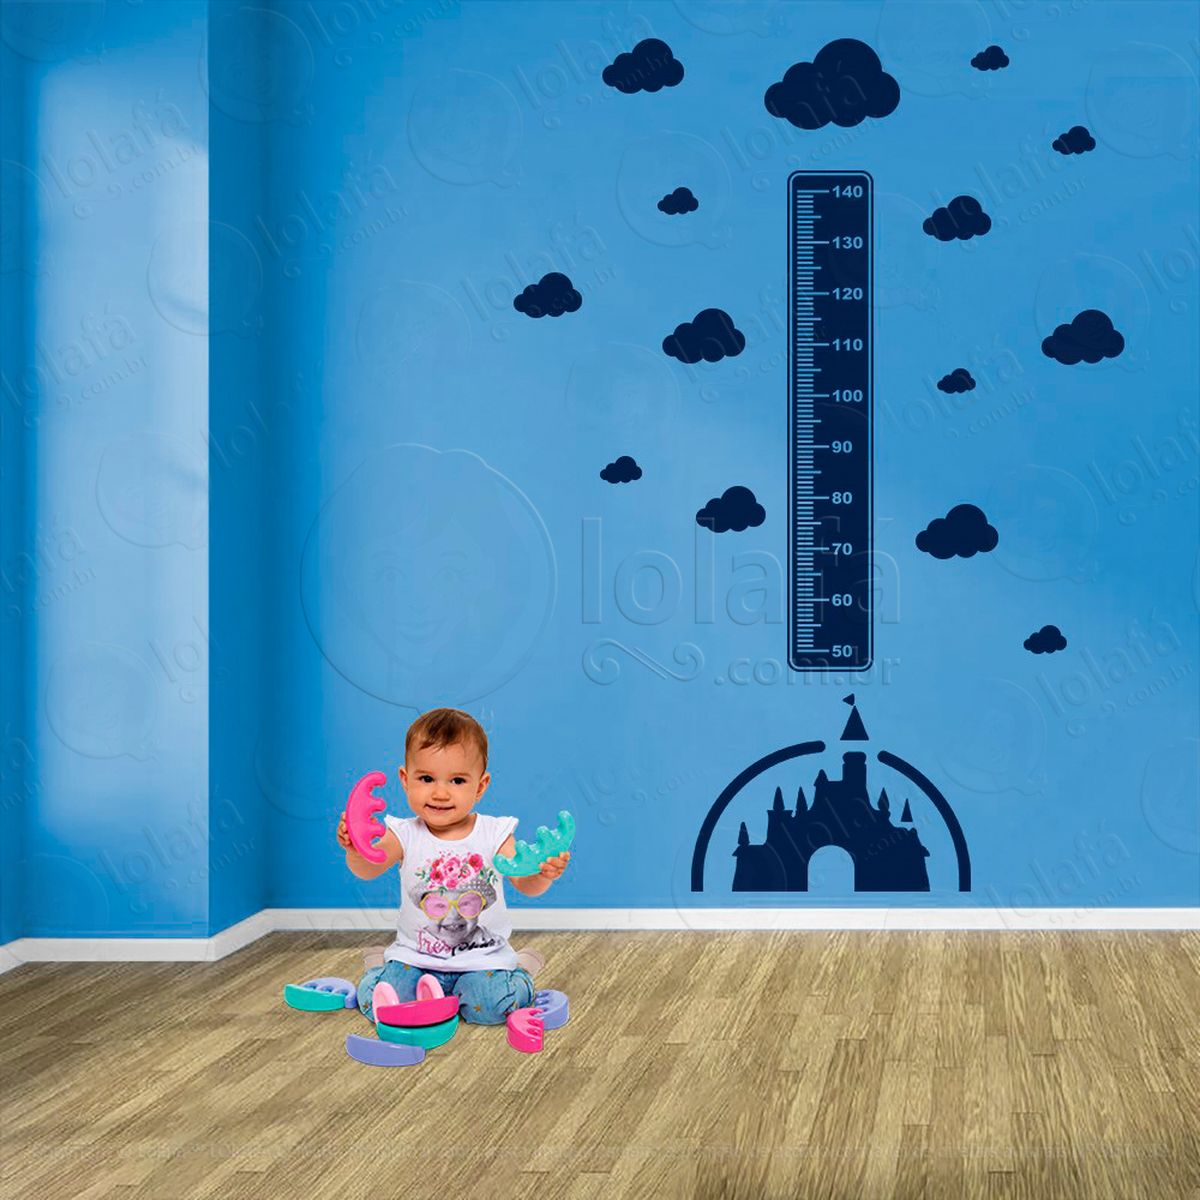 castelo e nuvens adesivo régua de crescimento infantil, medidor de altura para quarto, porta e parede - mod:567